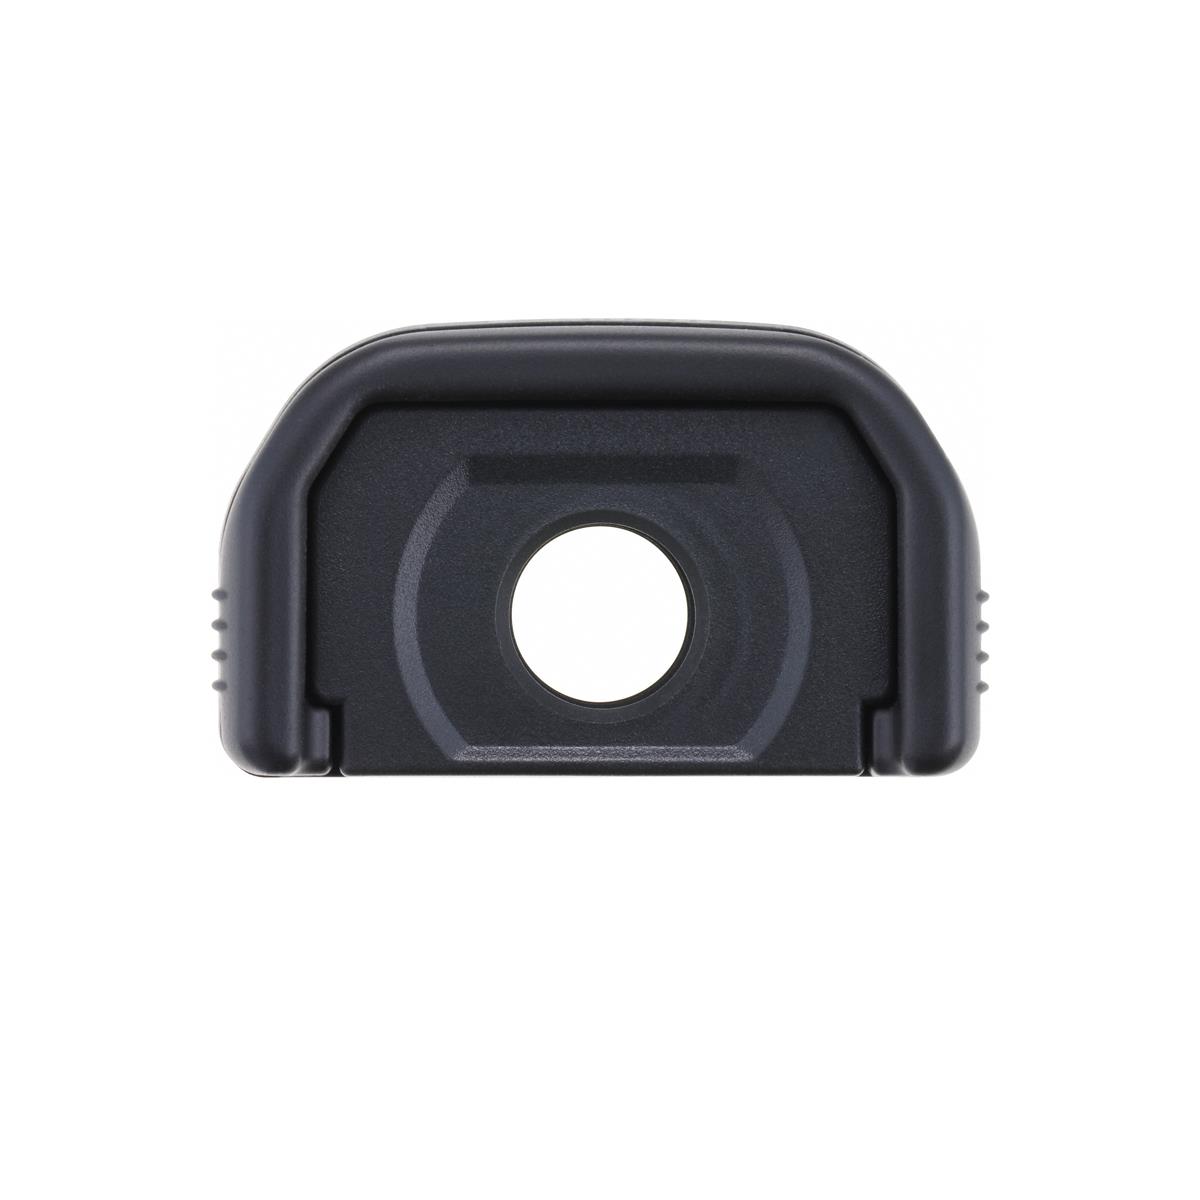 Canon MG-Ef Magnifying Eyepiece for Select Canon Cameras